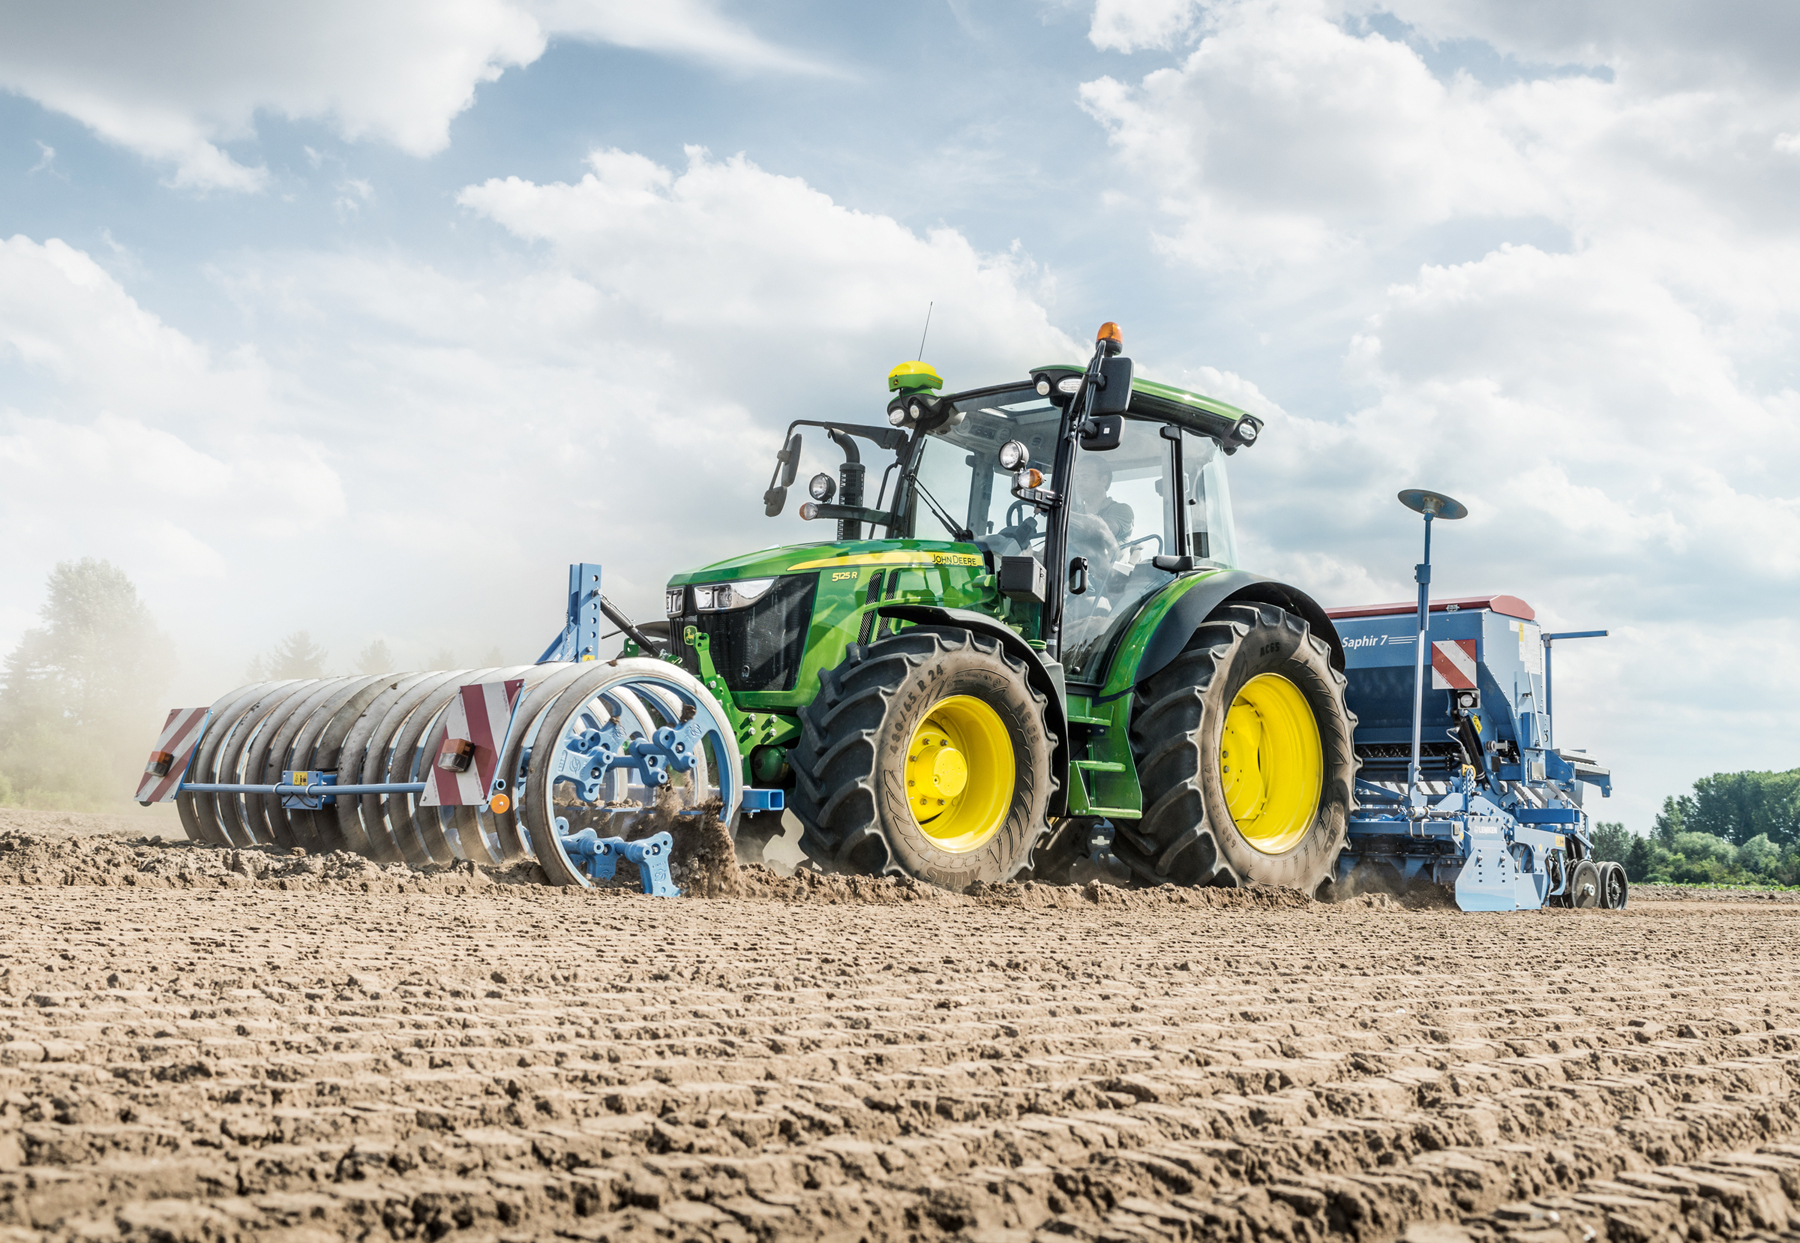 John Deere updates 5R Series tractors for 2019